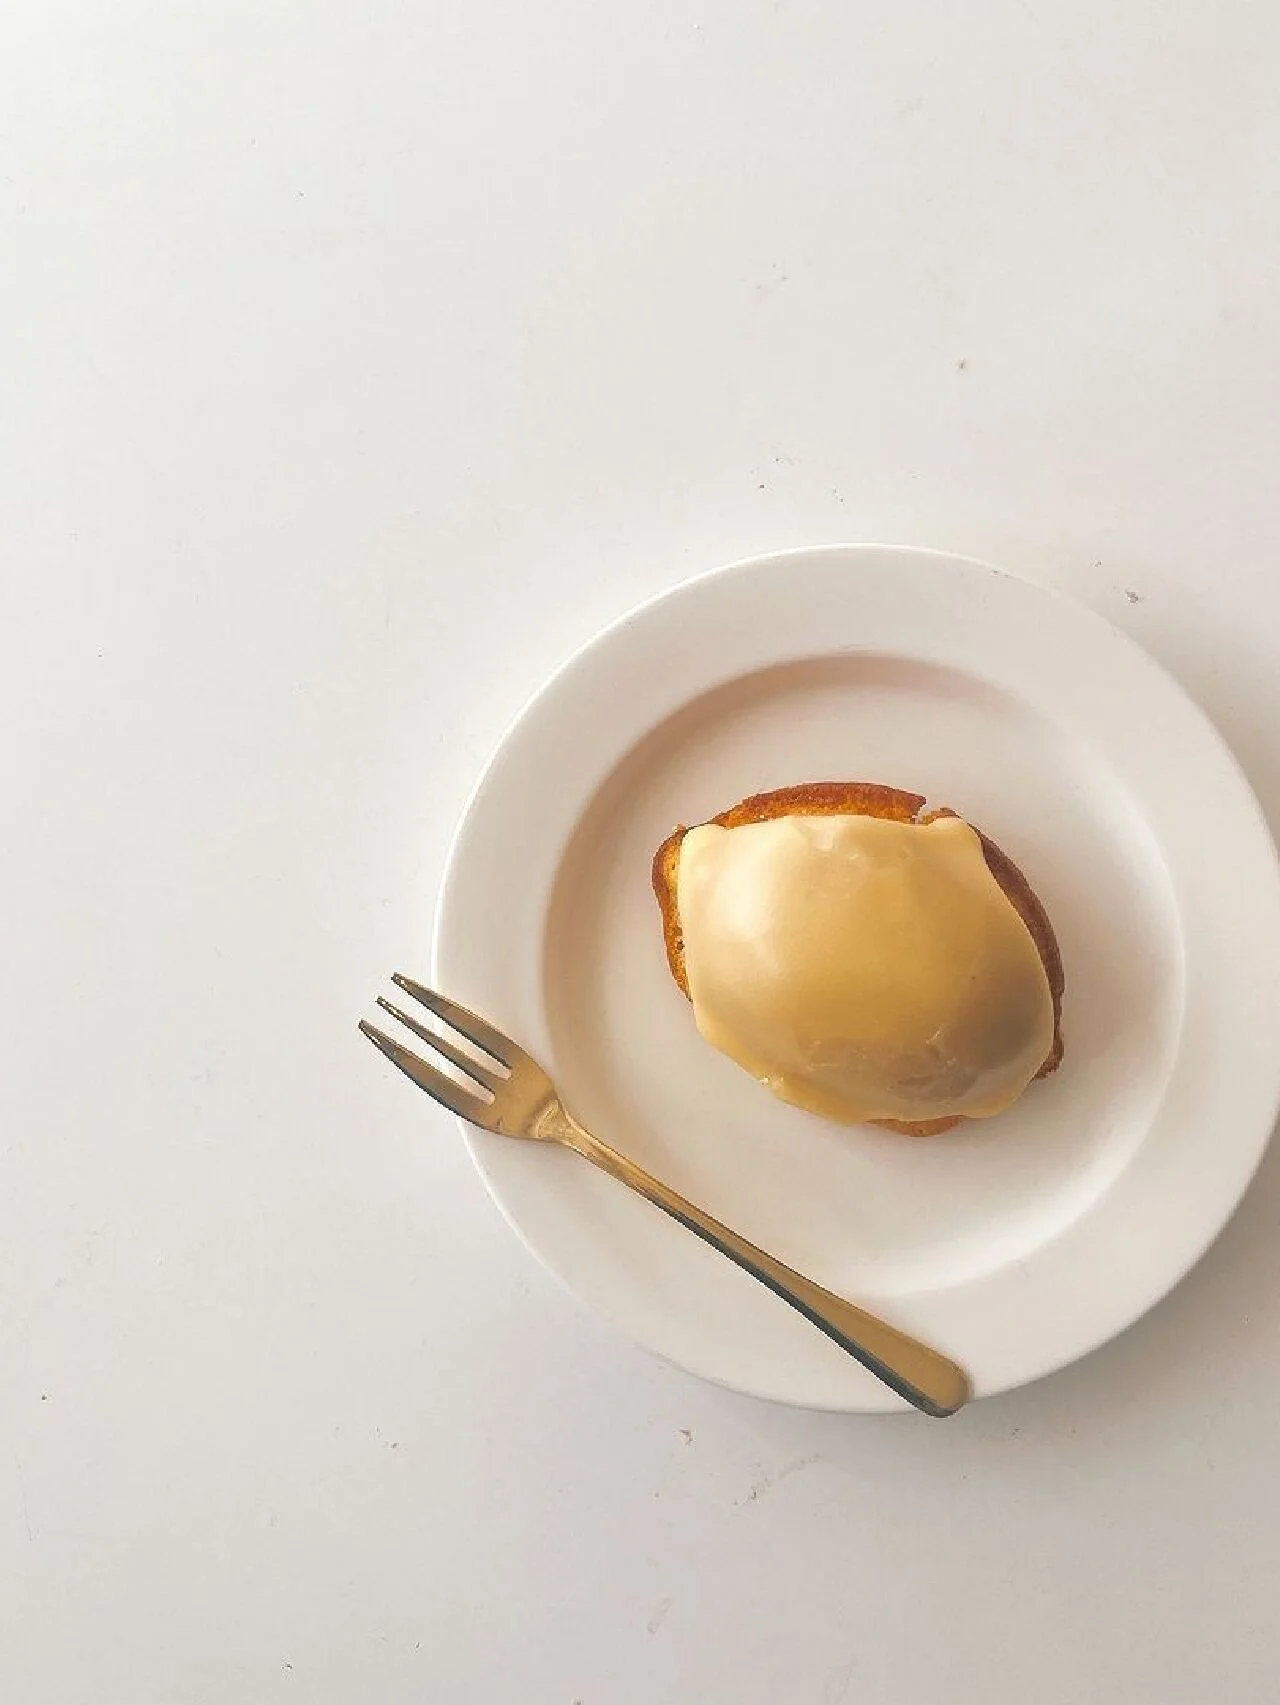 トロピカルなレモンケーキ【Pacific BAKE HOUSE｜リリコイレモンケーキ】